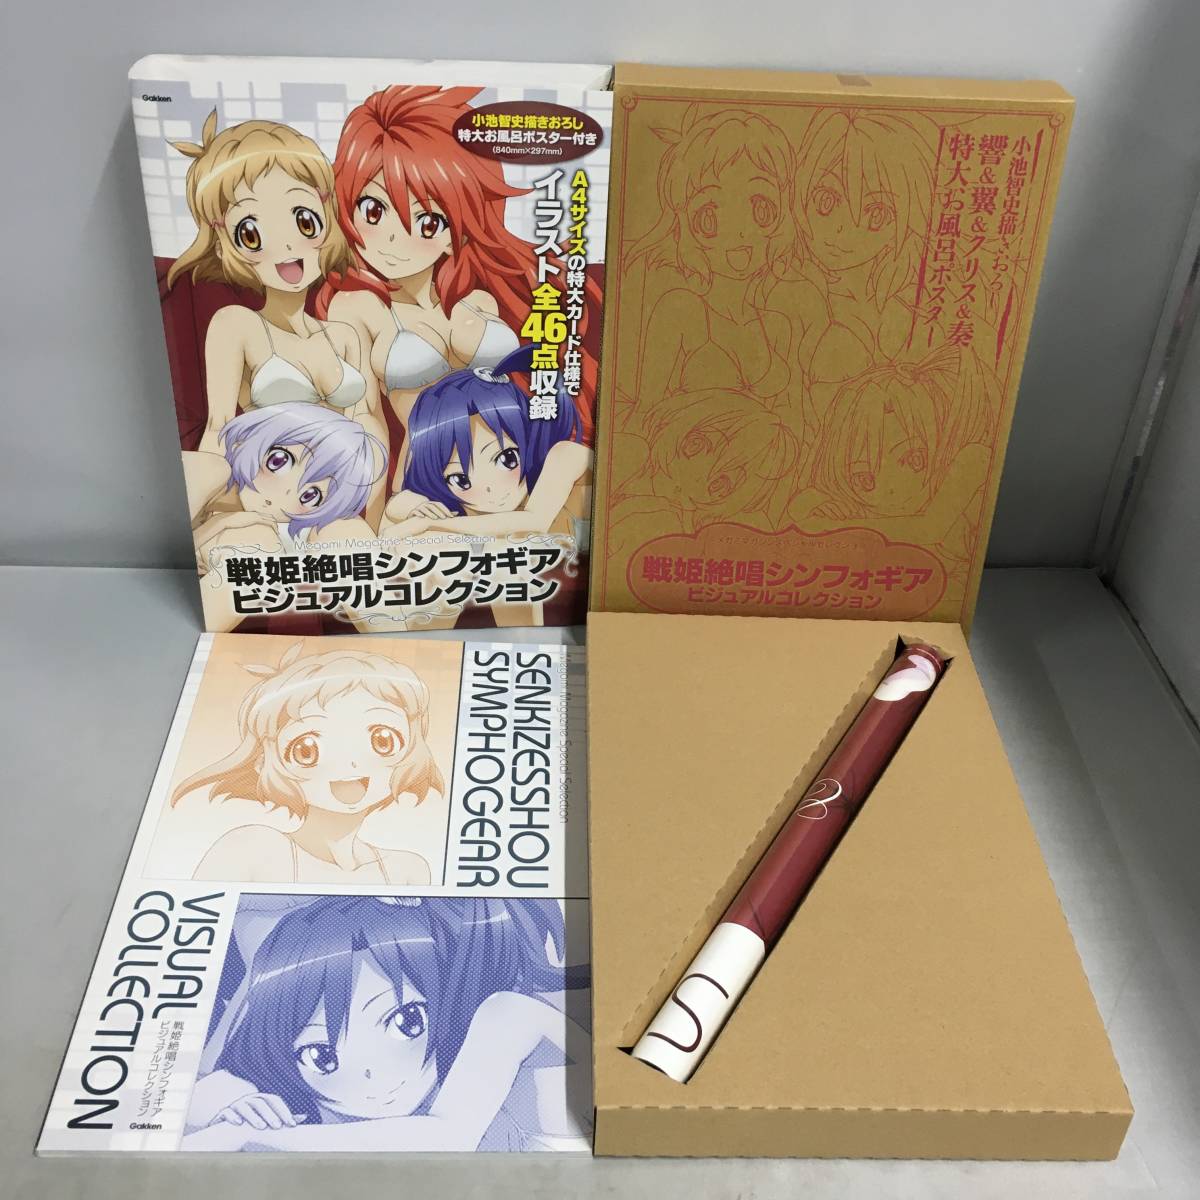 戦姫絶唱シンフォギア ビジュアルコレクション 3冊セット - アート 